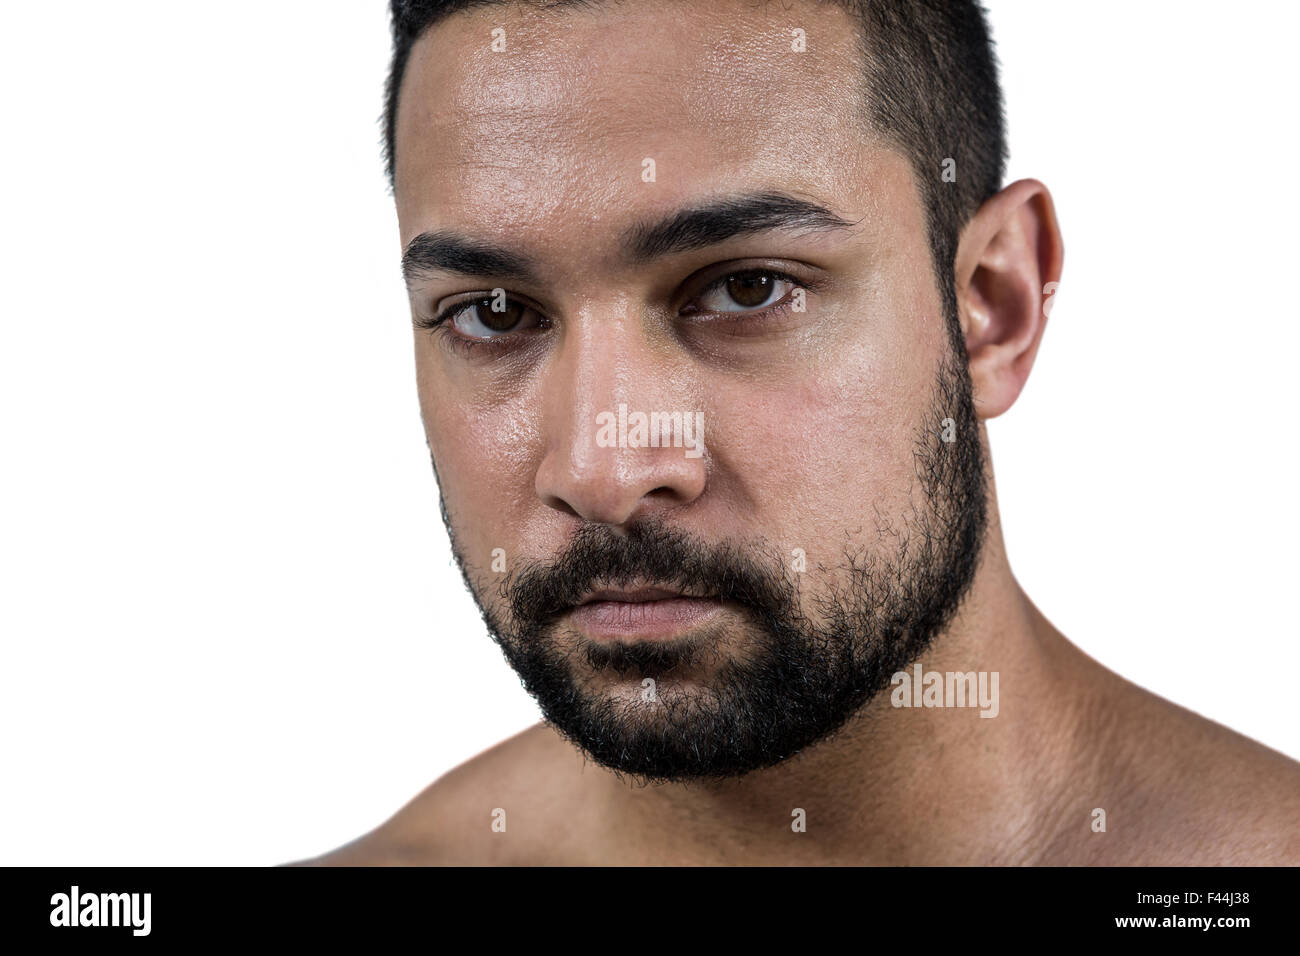 Muscular man frowning at camera Stock Photo